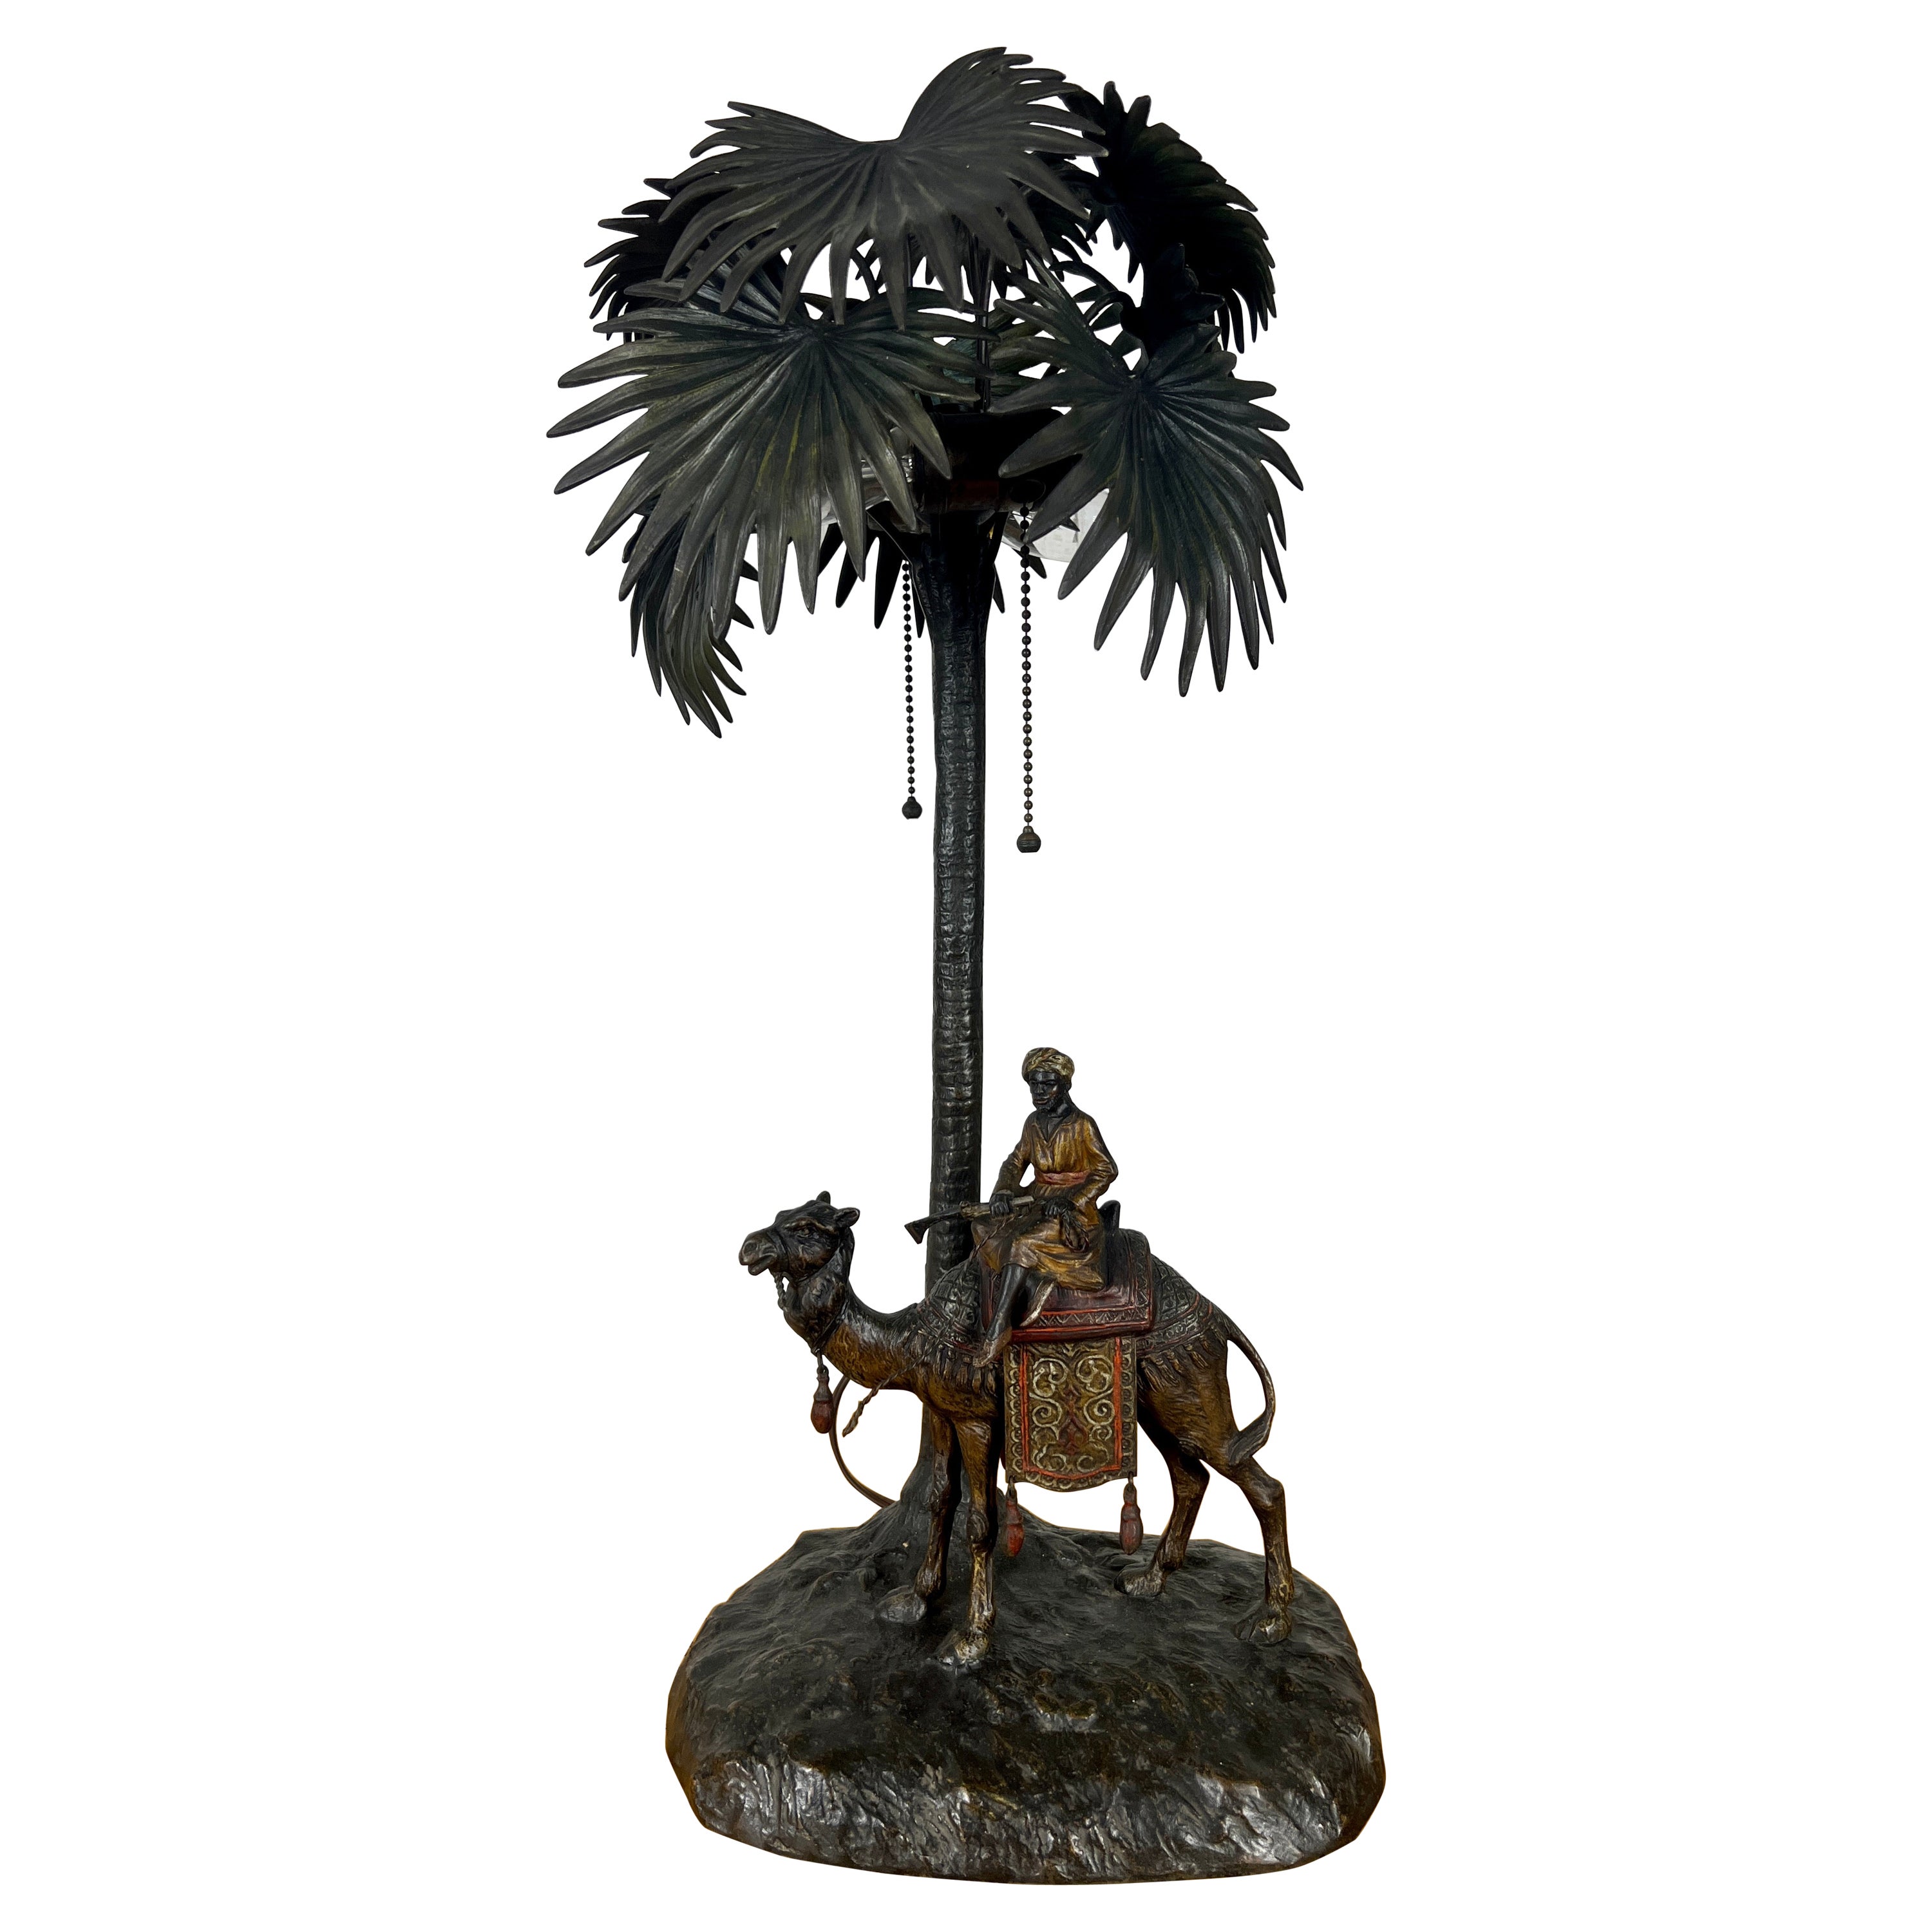 Lampe orientaliste autrichienne en bronze peint à froid attribuée à Bergman